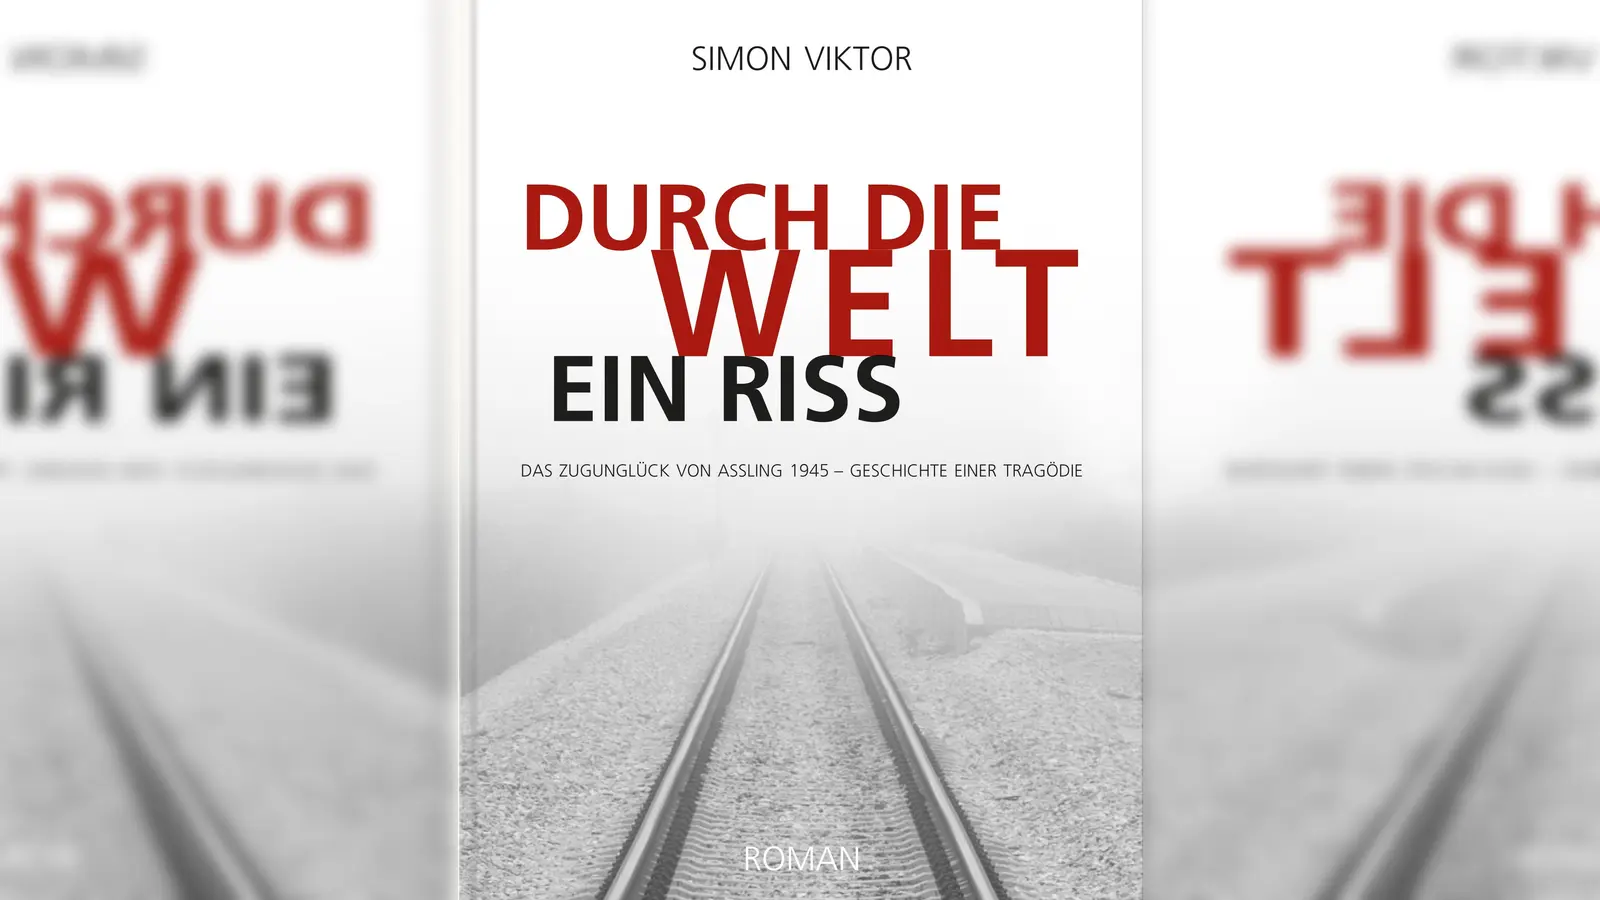 Das auf einer wahren Begebenheit basierende Buch beleuchtet auf eindrucksvolle Weise das schwerste Zugunglück in Deutschland seit 1945. (Foto: Battenberg Verlag)